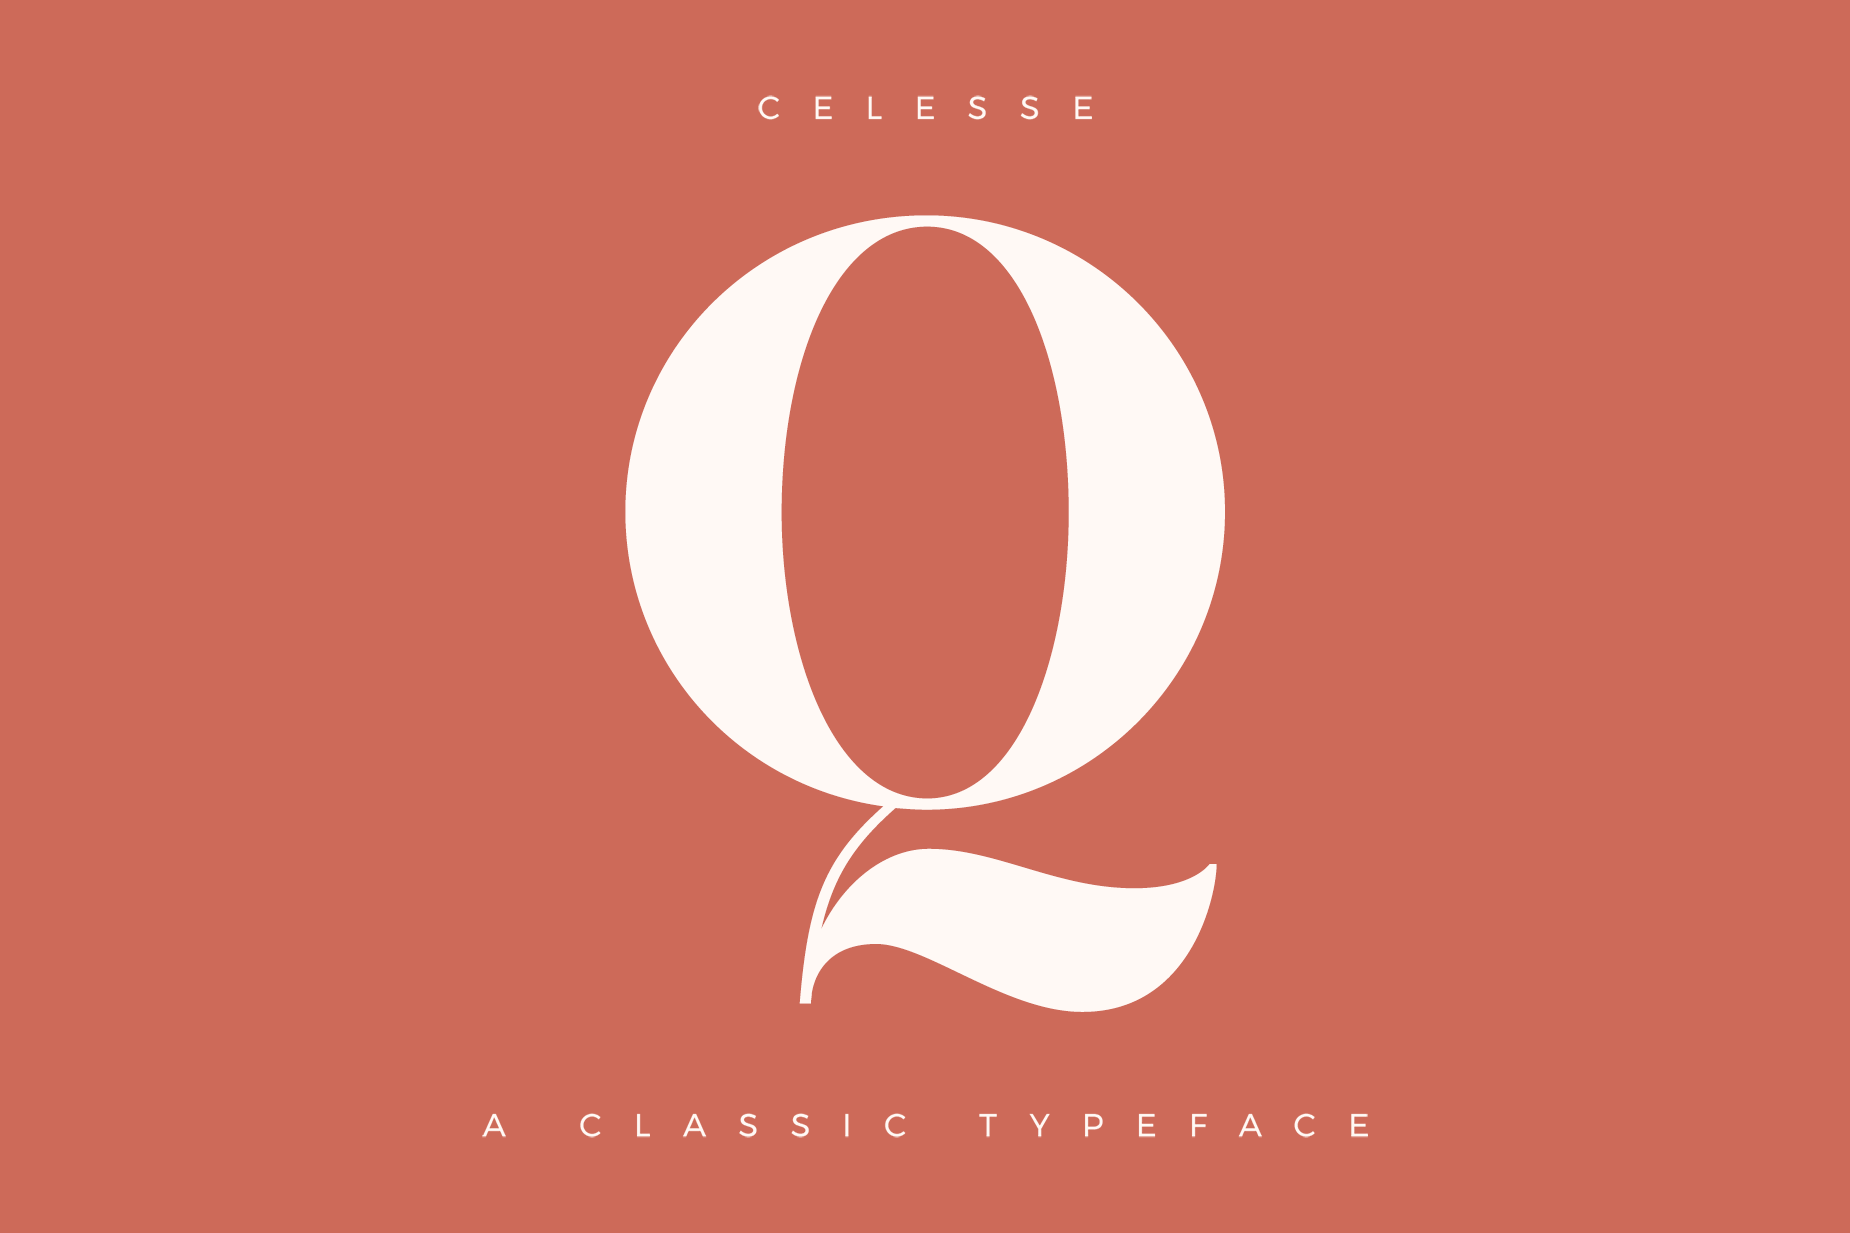 Logo chữ Q sẽ trở nên ấn tượng và sang trọng hơn với những thiết kế tinh tế và đẹp mắt từ Bee Design. Dễ dàng tìm thấy nhiều mẫu logo chữ Q sáng tạo, phù hợp cho nhiều mục đích và doanh nghiệp. Hãy xem qua hình ảnh đính kèm để chọn lựa cho mình thiết kế logo chữ Q ưng ý nhất.